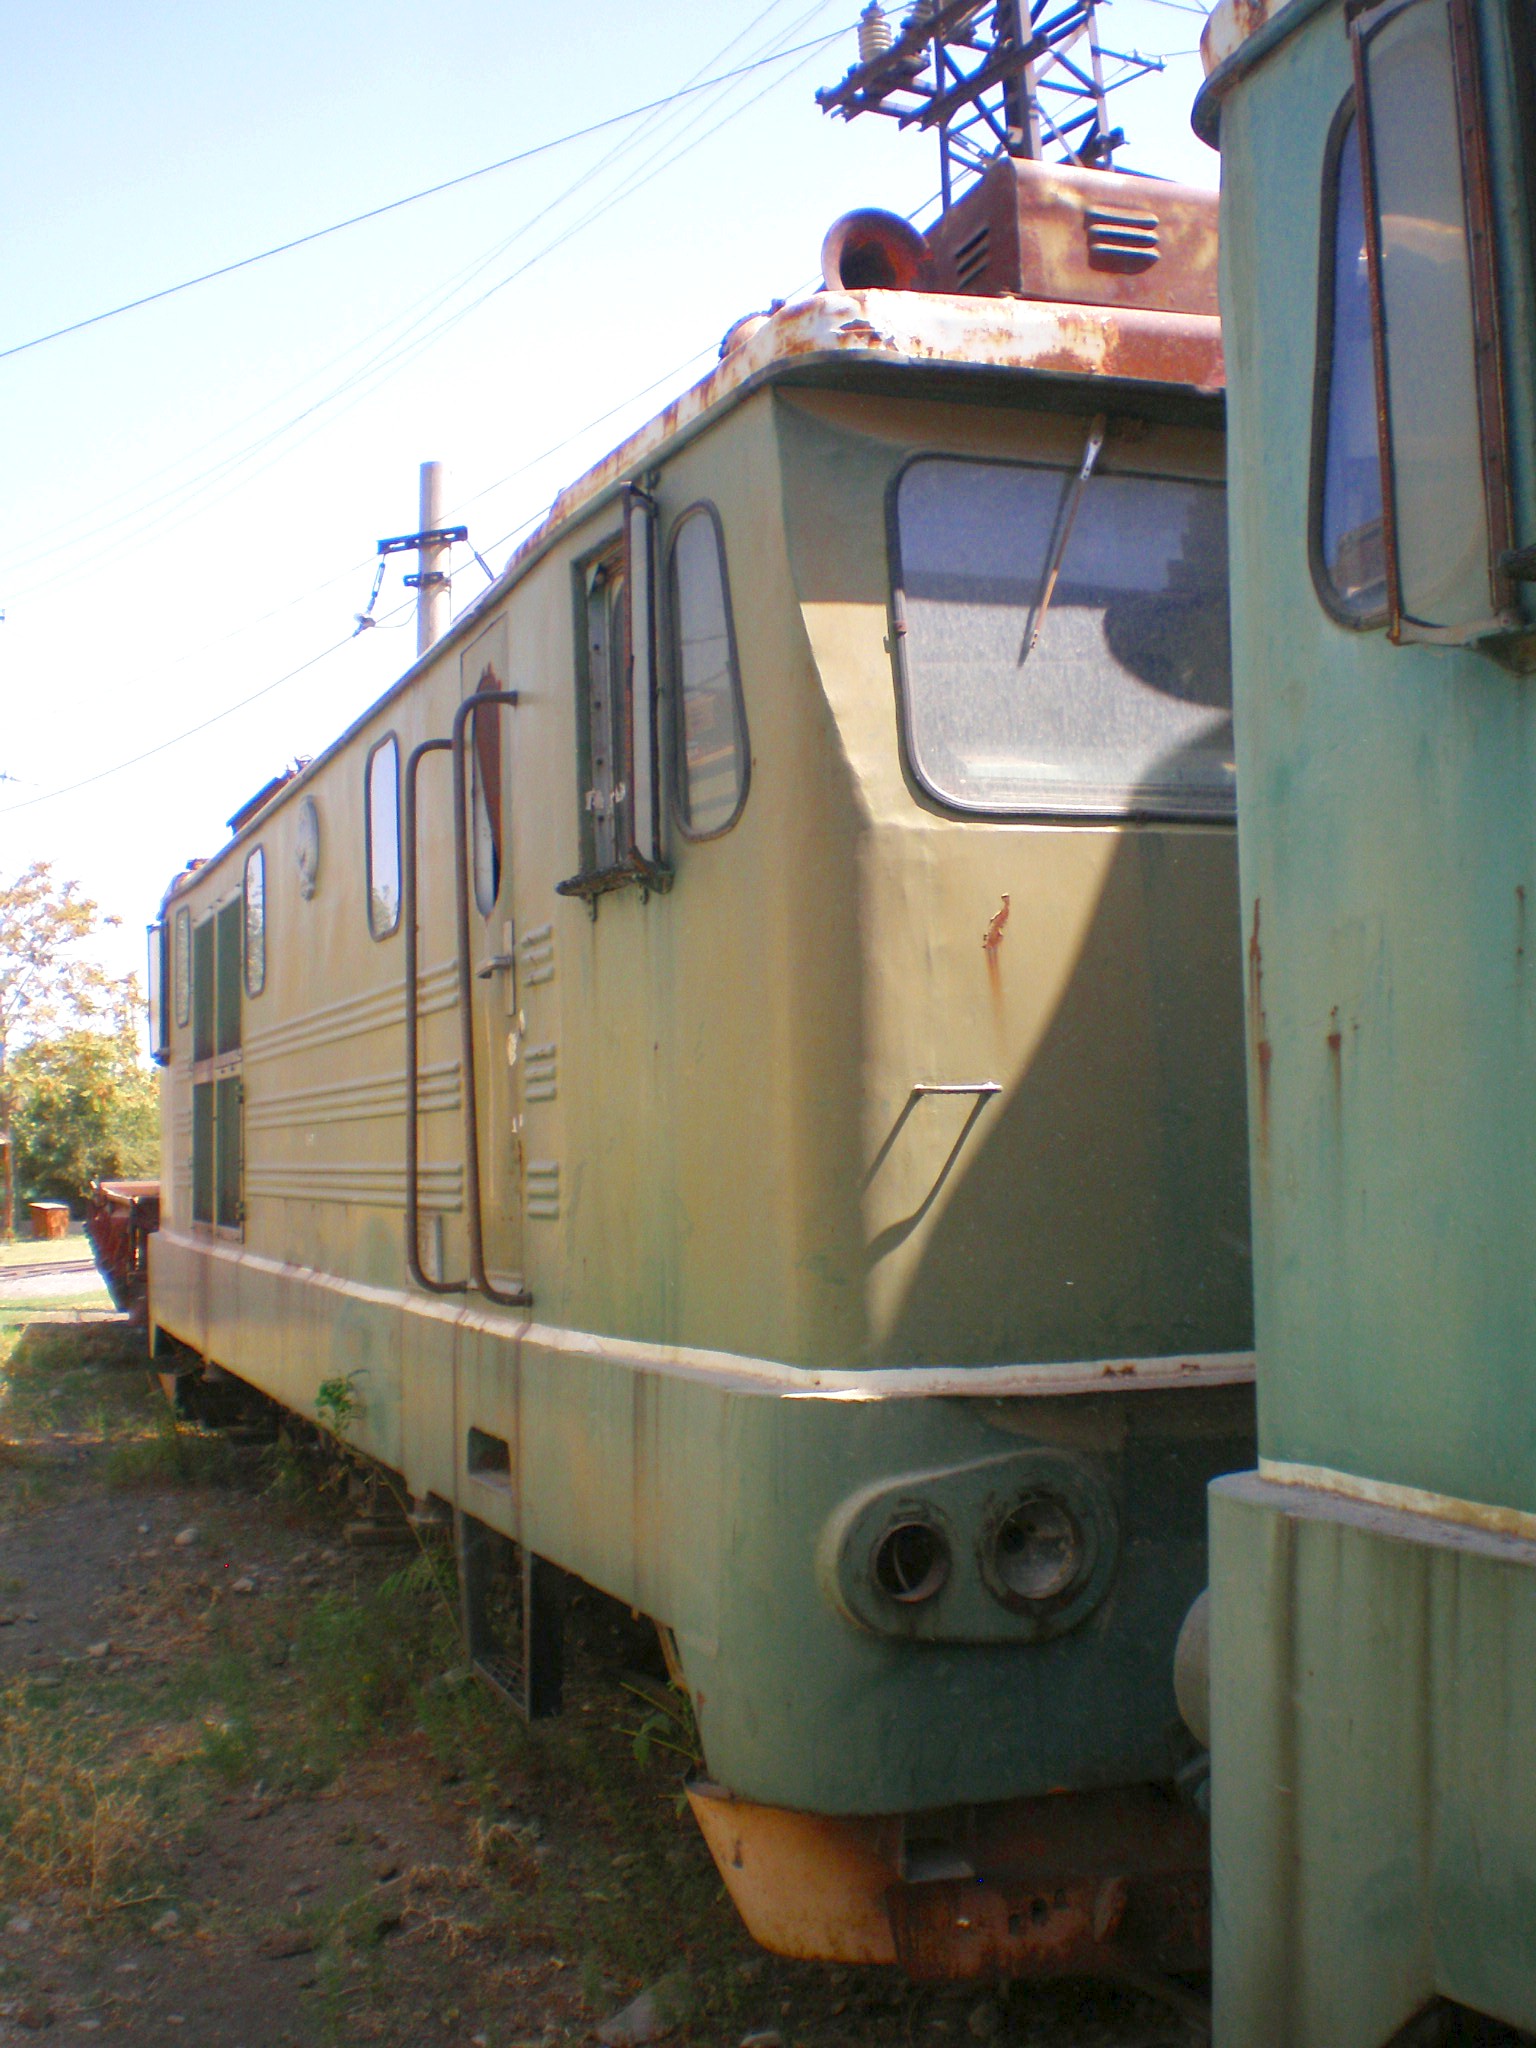 Сулюктинская узкоколейная железная дорога  —  фотографии, сделанные в 2008 году (часть 11)